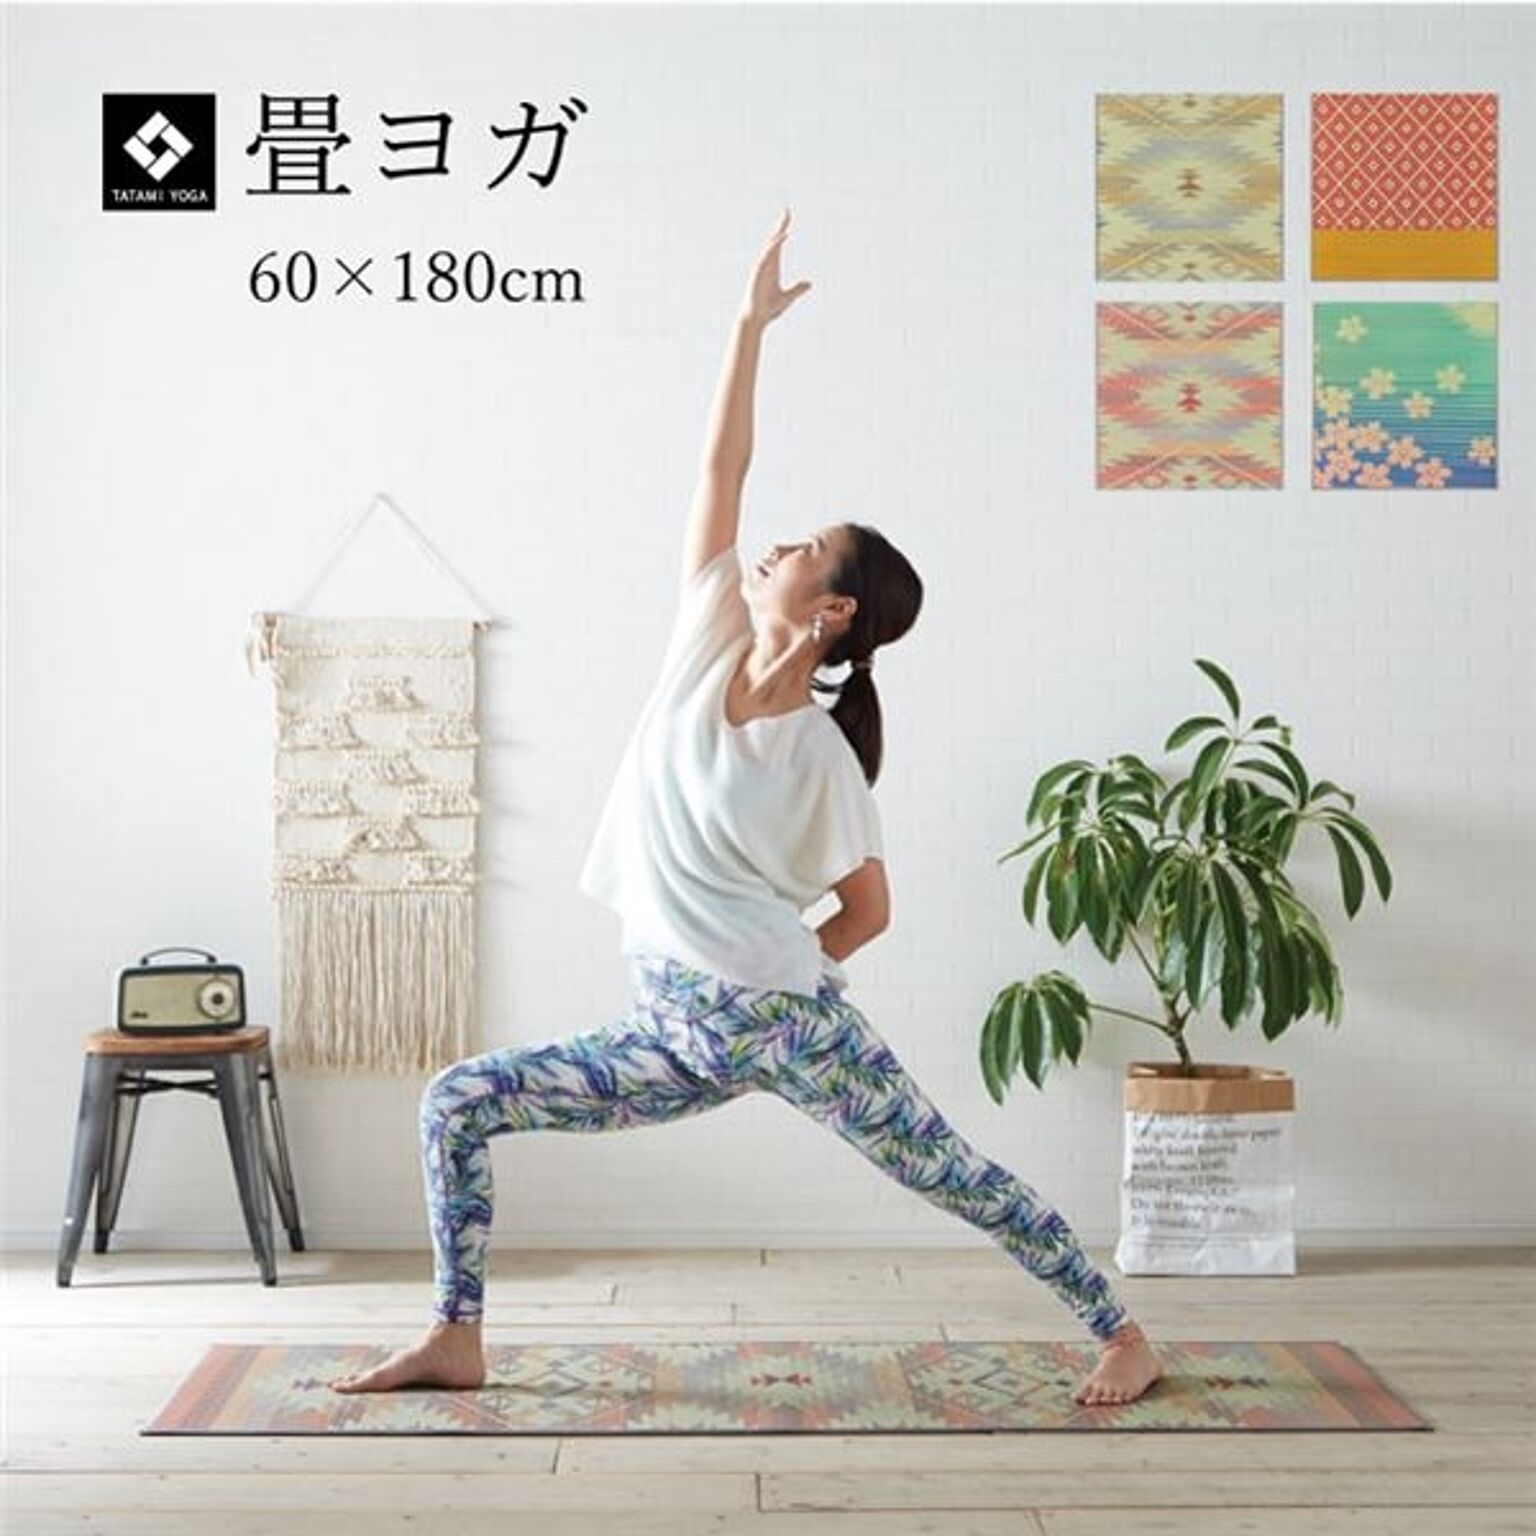 ヨガ yoga 癒しマット 国産 おすすめ い草 畳 ヨガ yoga 癒し 『SAKURA富士』 約60×180cm【代引不可】